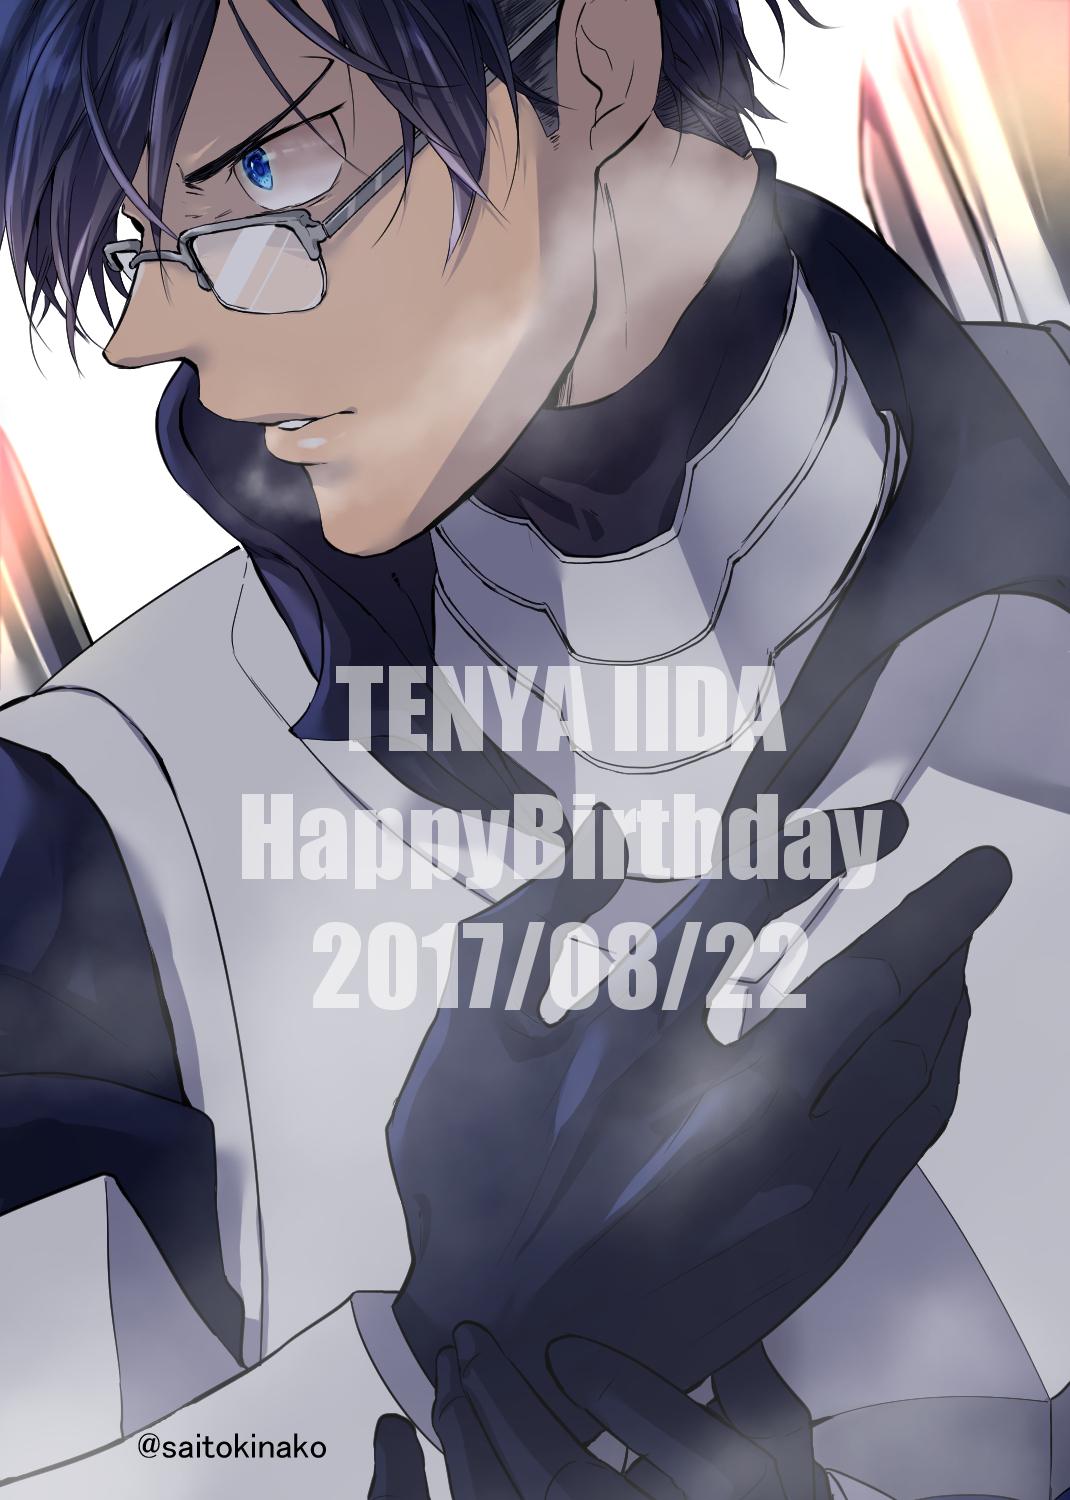 Iida Tenya no Hero Academia Anime Image Board